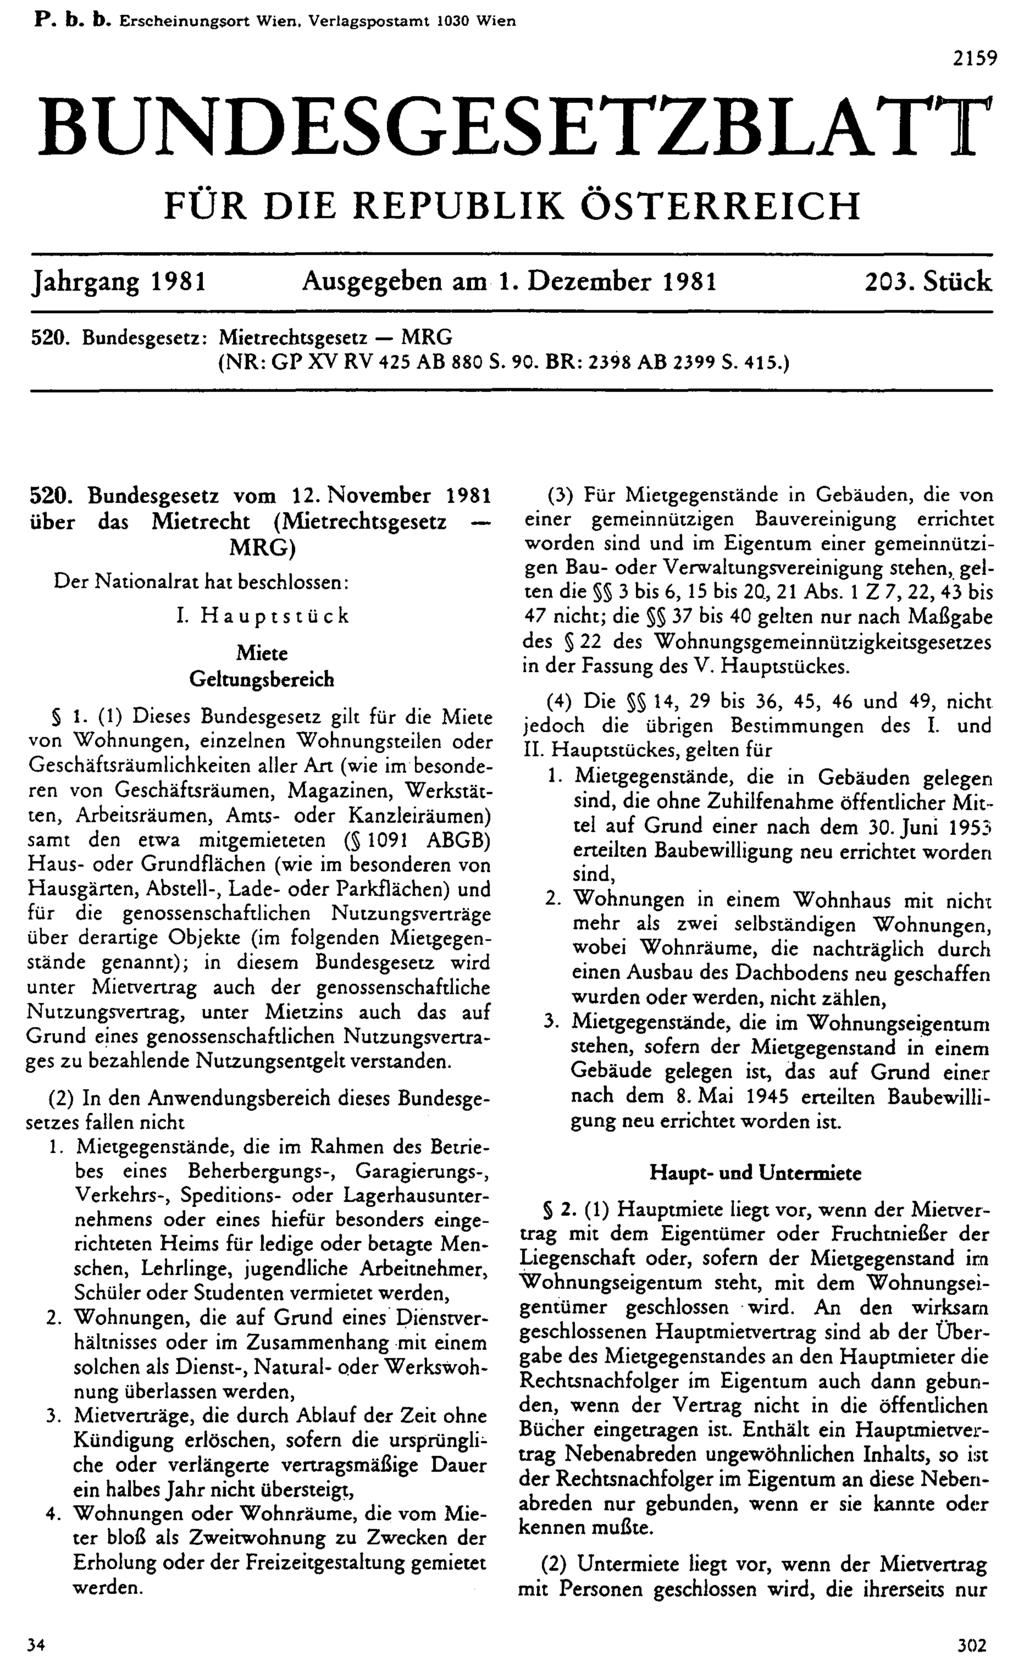 P. b. b. Erscheinungsort Wien, Verlagspostamt 1030 Wien BUNDESGESETZBLATT FÜR DIE REPUBLIK ÖSTERREICH Jahrgang 1981 Ausgegeben am 1. Dezember 1981 203. Stück 520.